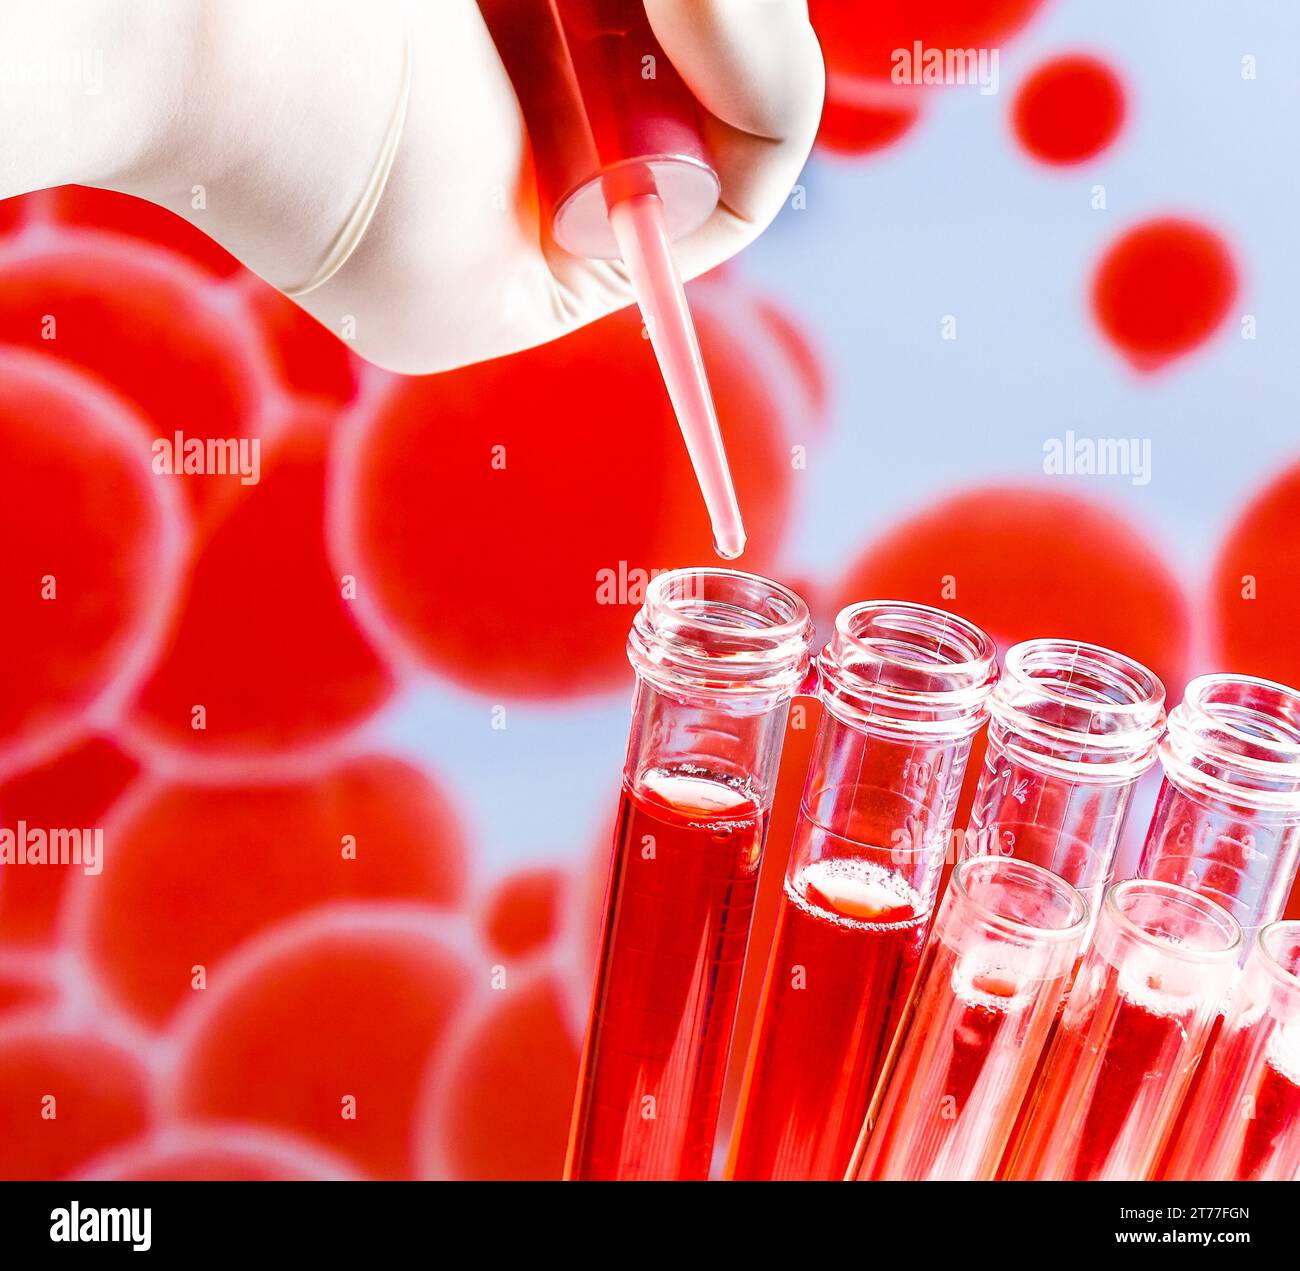 Nahaufnahme von Reagenzgläsern mit Pipette auf roter Flüssigkeit auf blauem abstraktem Bluthintergrund Stockfoto